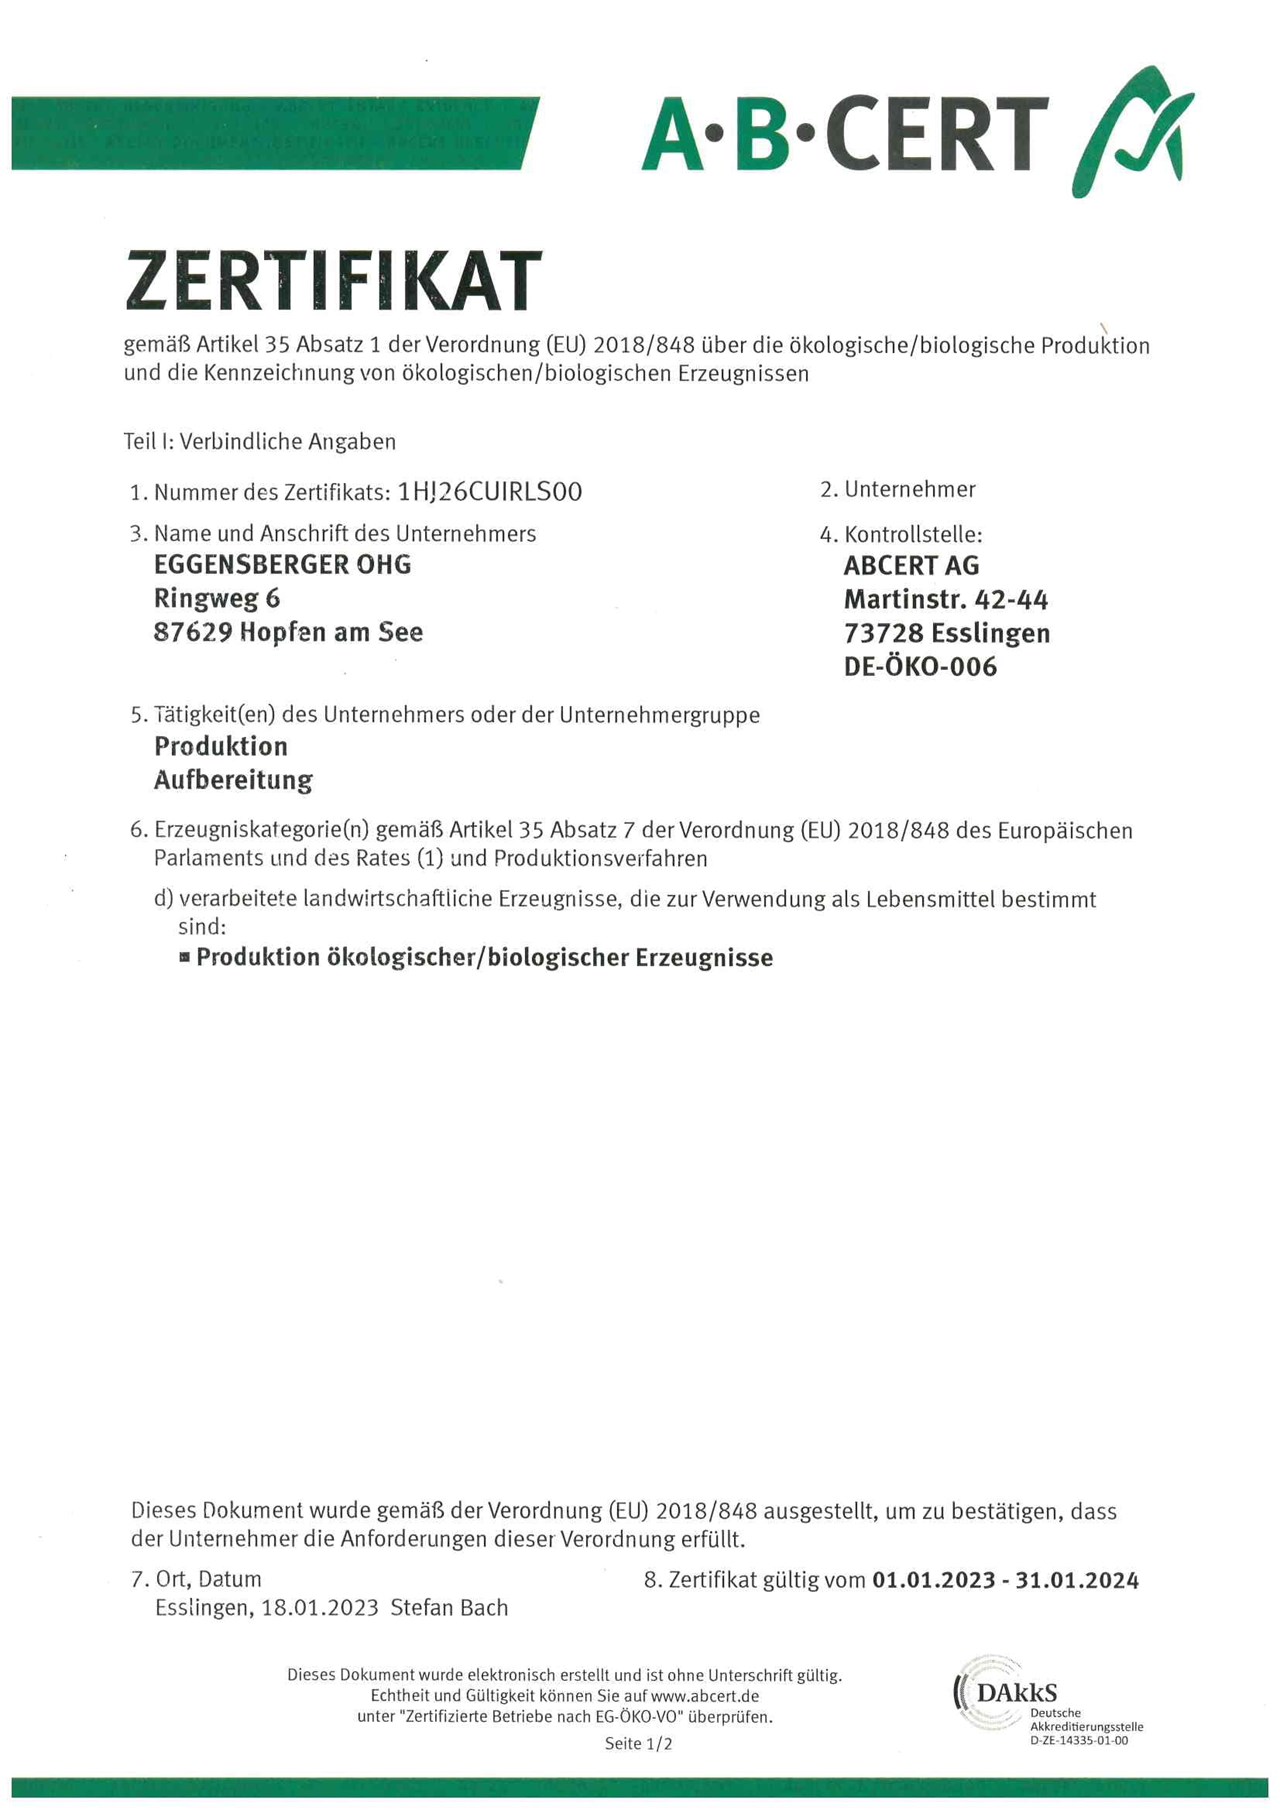 Biohotel Eggensberger Evidence certificates AB Cert: DE-ÖKO-006